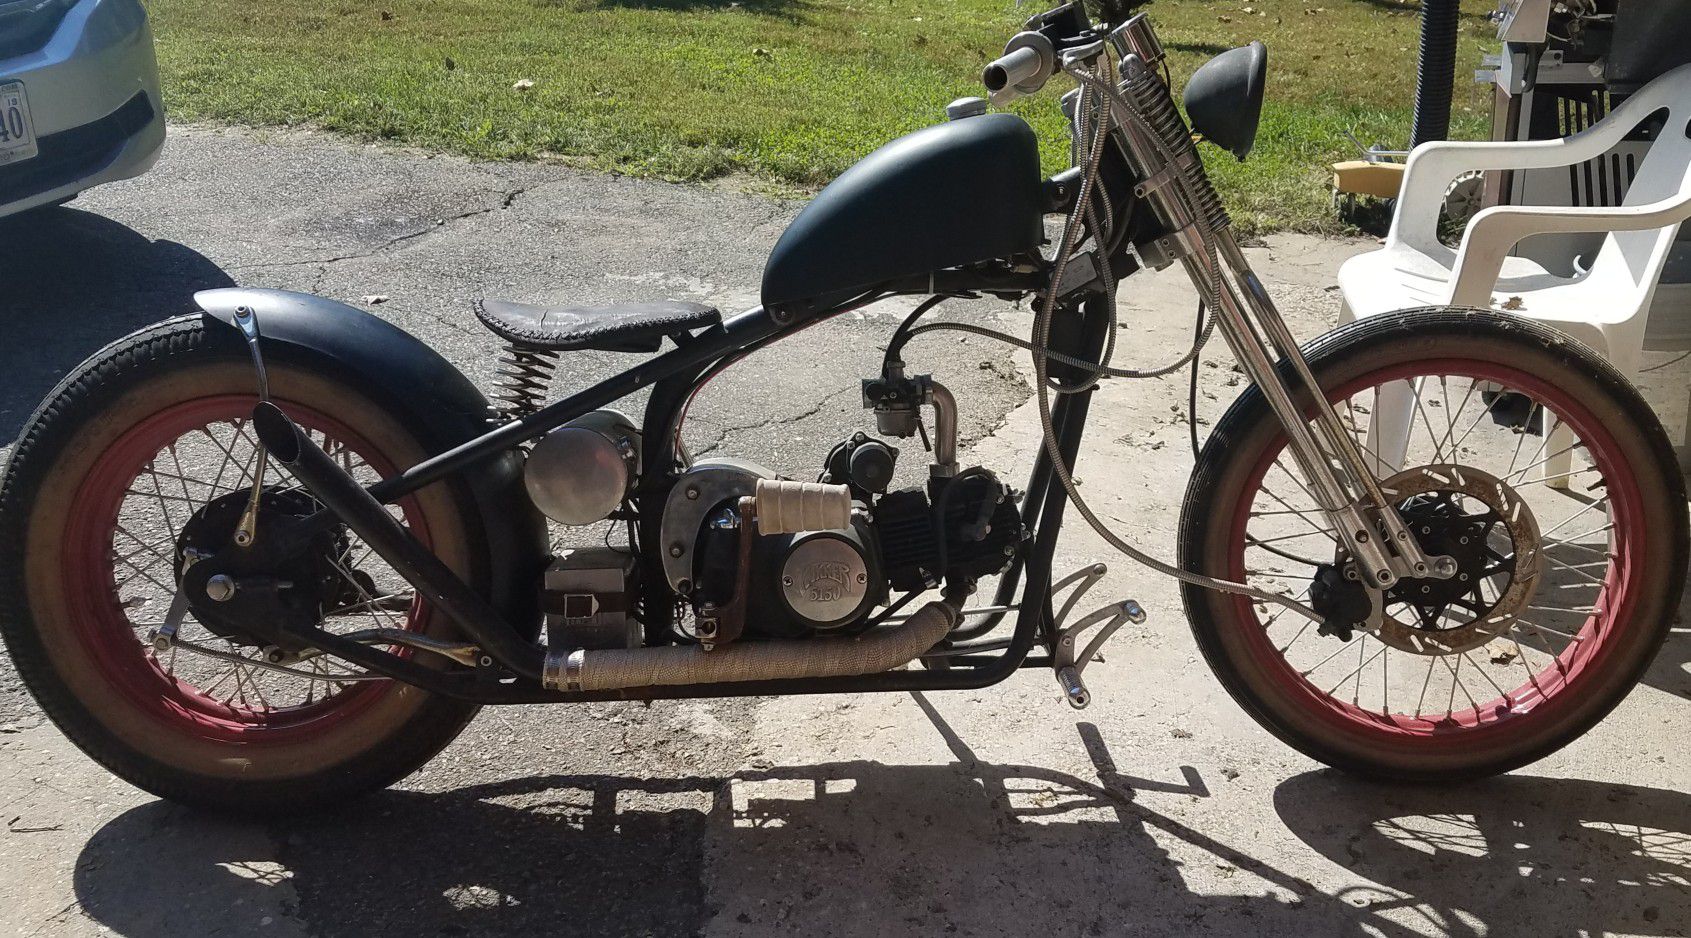 Kit motorcycle